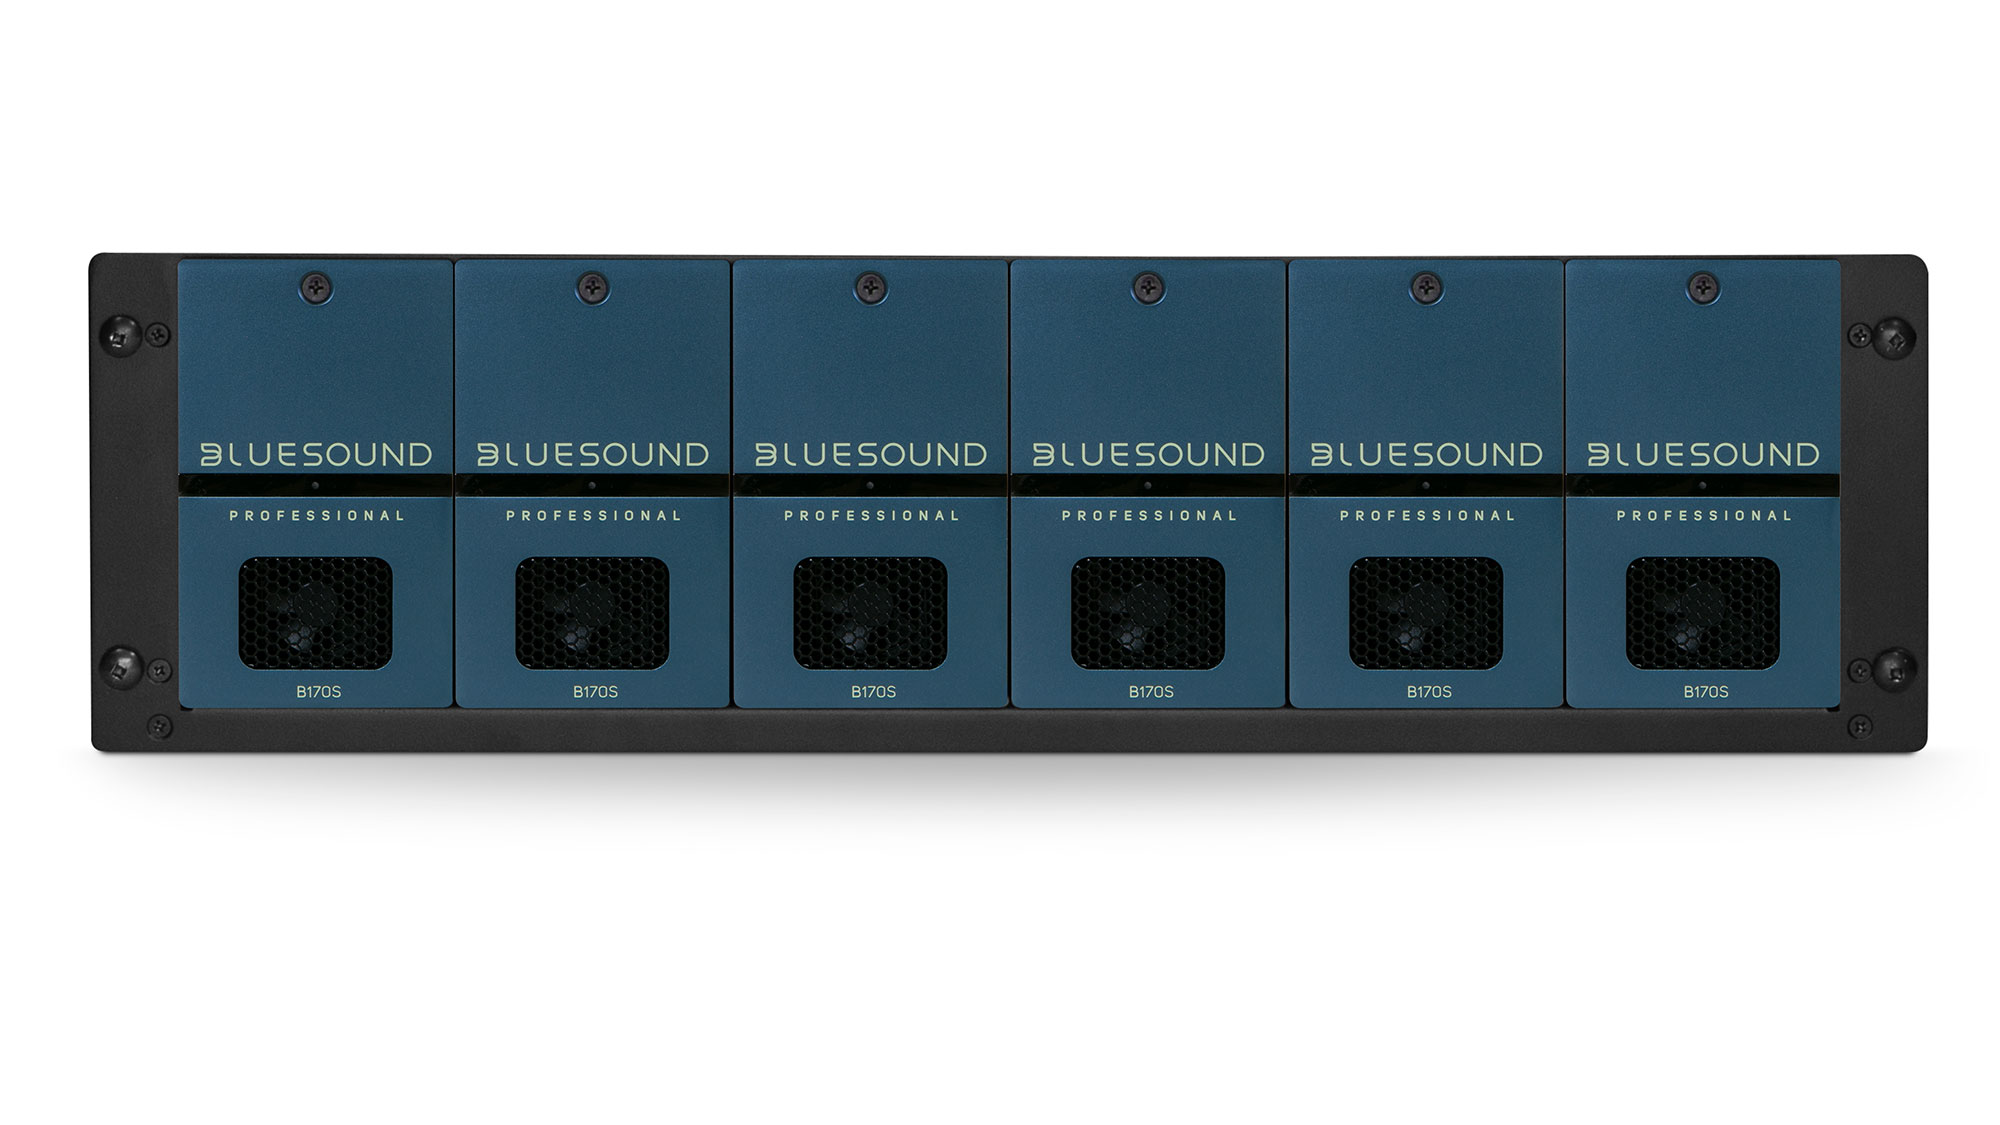 Sechs Bluesound Professional B170S in einem Rack